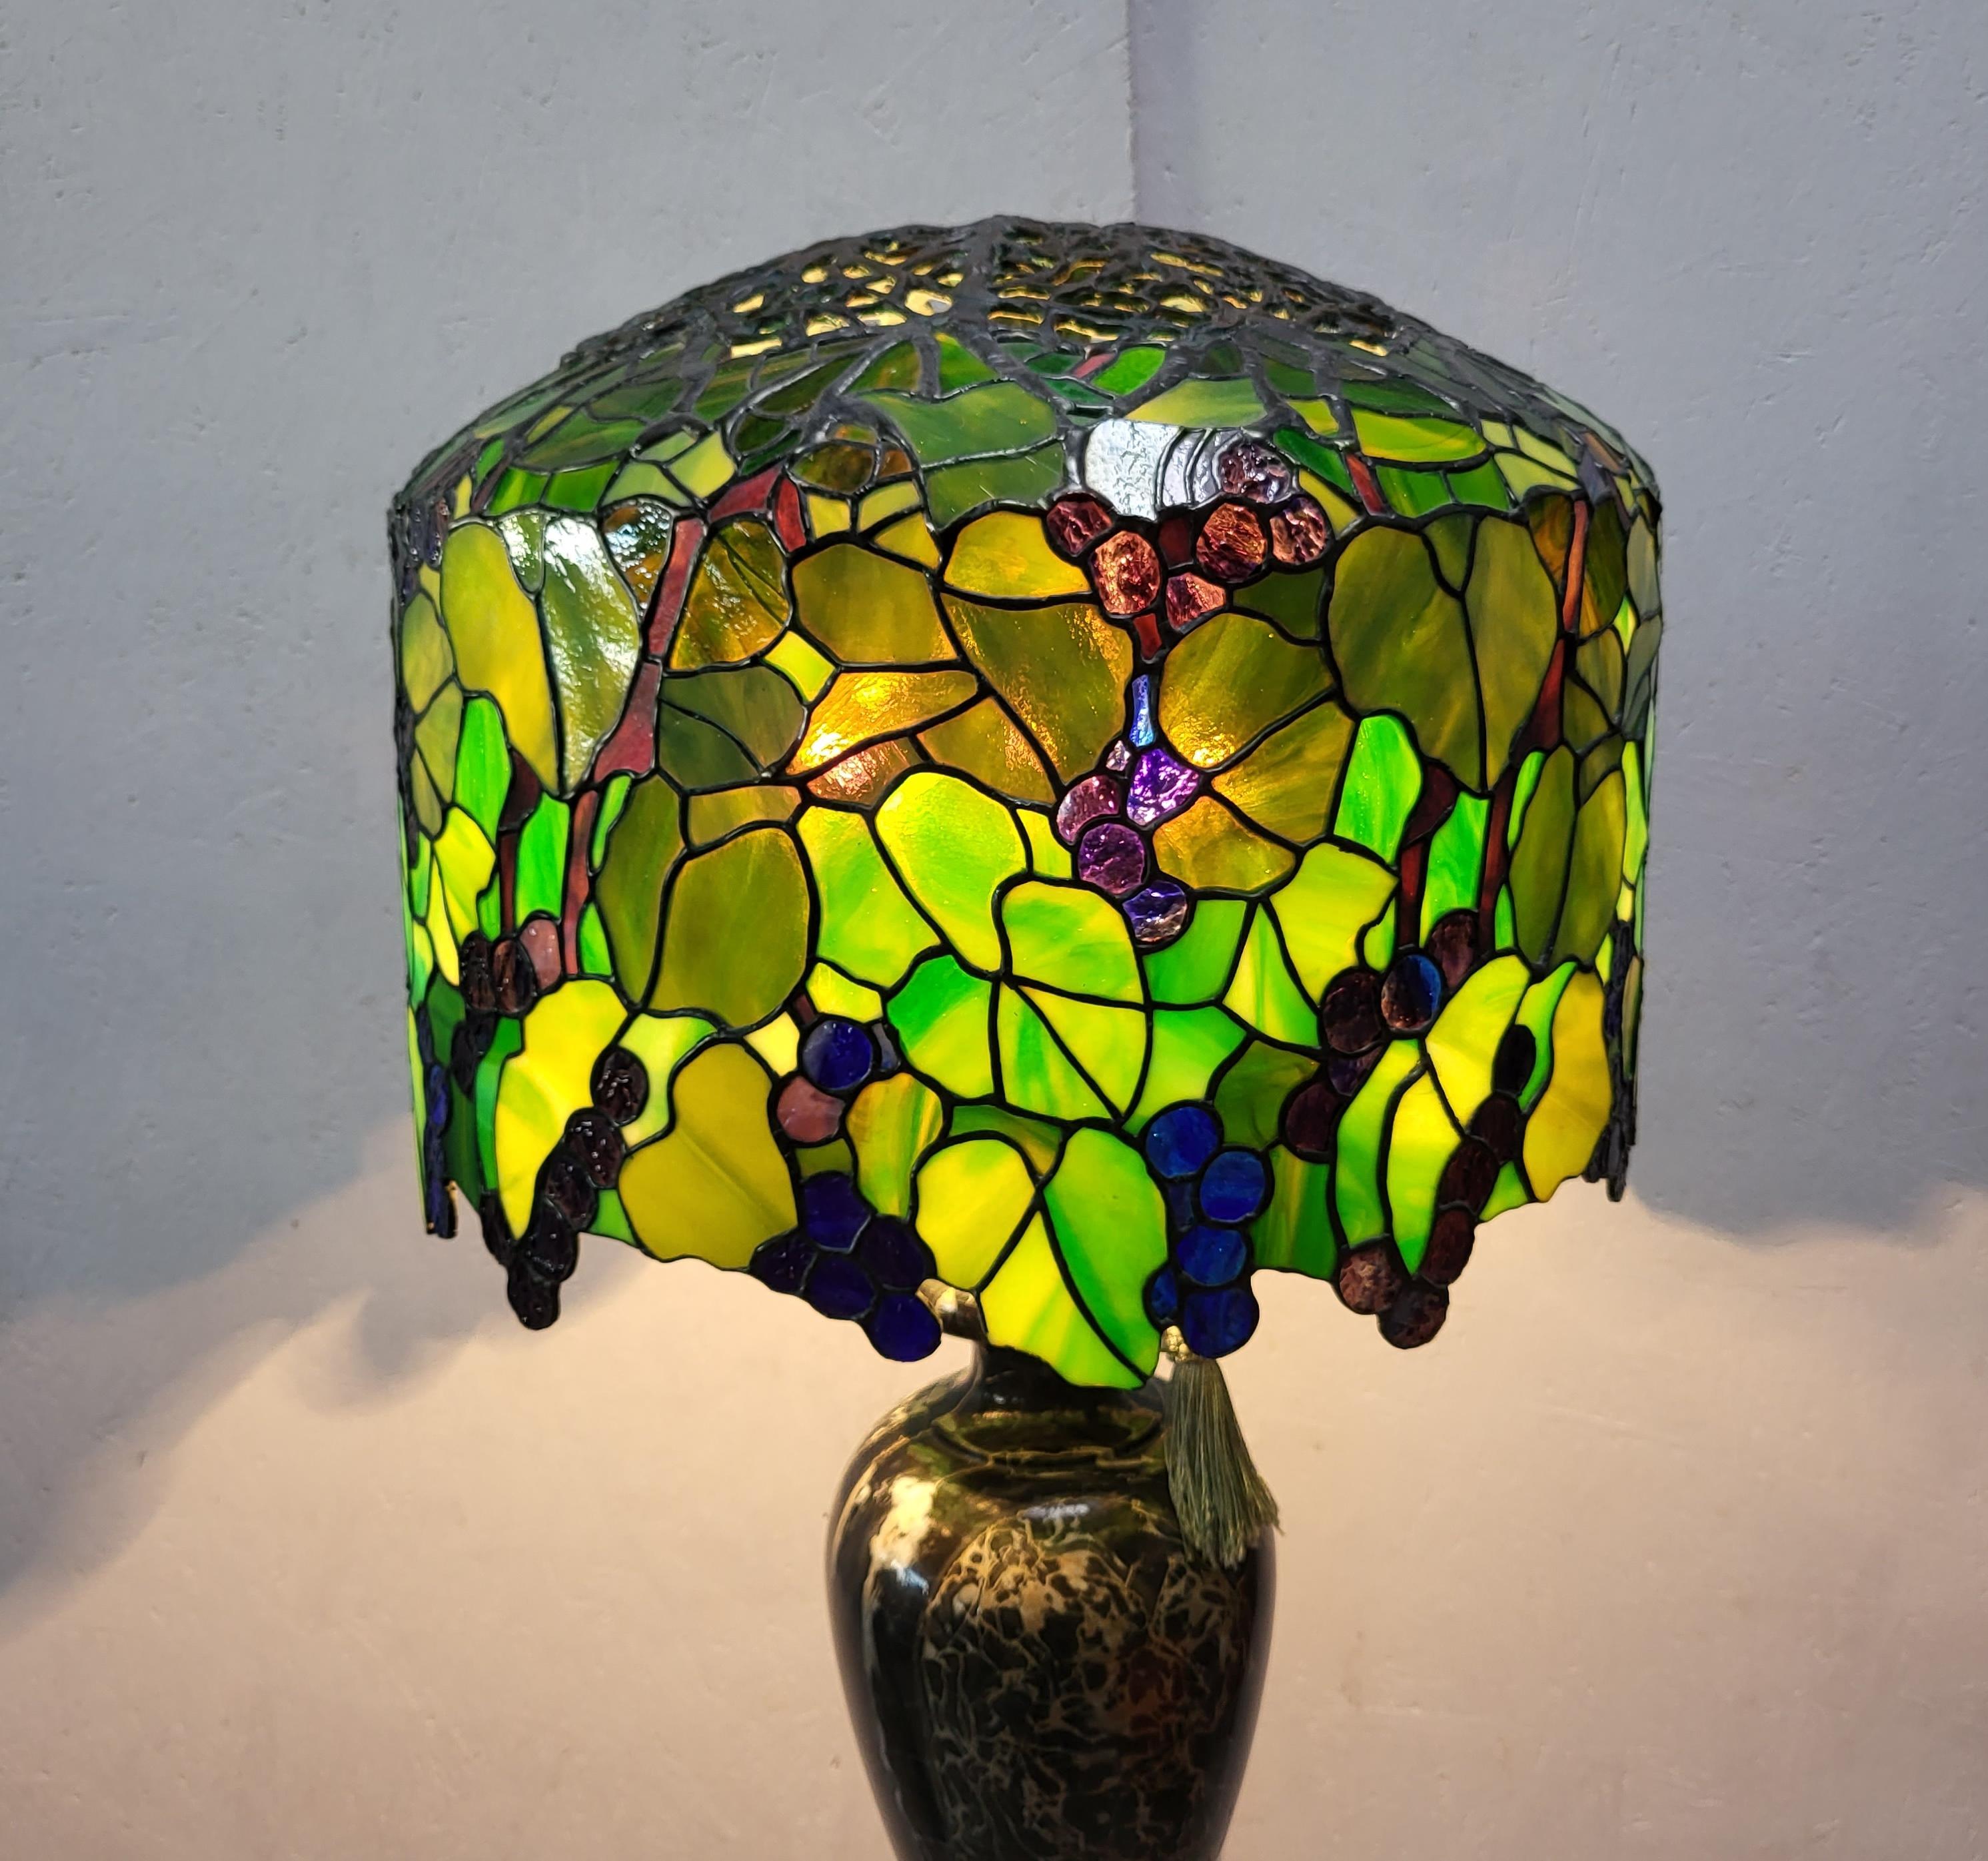 Atemberaubende und erstaunliche Lampe in der Art der Tiffany Studios. 
Sehr beeindruckende handgefertigte Lampe mit einem wunderschönen Sockel aus Breccia-Marmor.
 
Sehr schöne Handarbeit, buntes Glas.

Die Lampe hat ein erstaunlich warmes Licht und